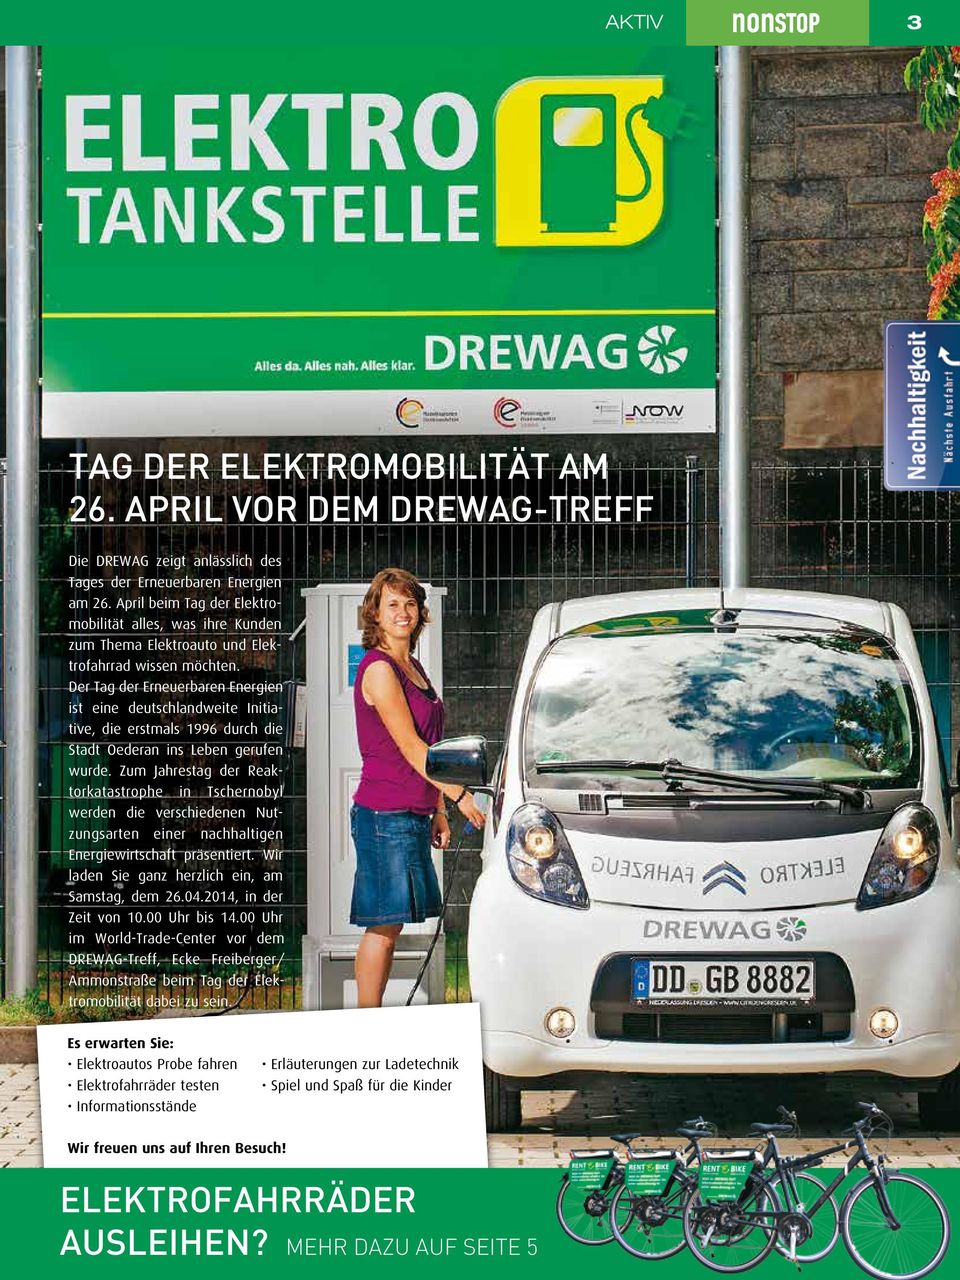 Der Tag der Erneuerbaren Energien ist eine deutschlandweite Initiative, die erstmals 1996 durch die Stadt Oederan ins Leben gerufen wurde.